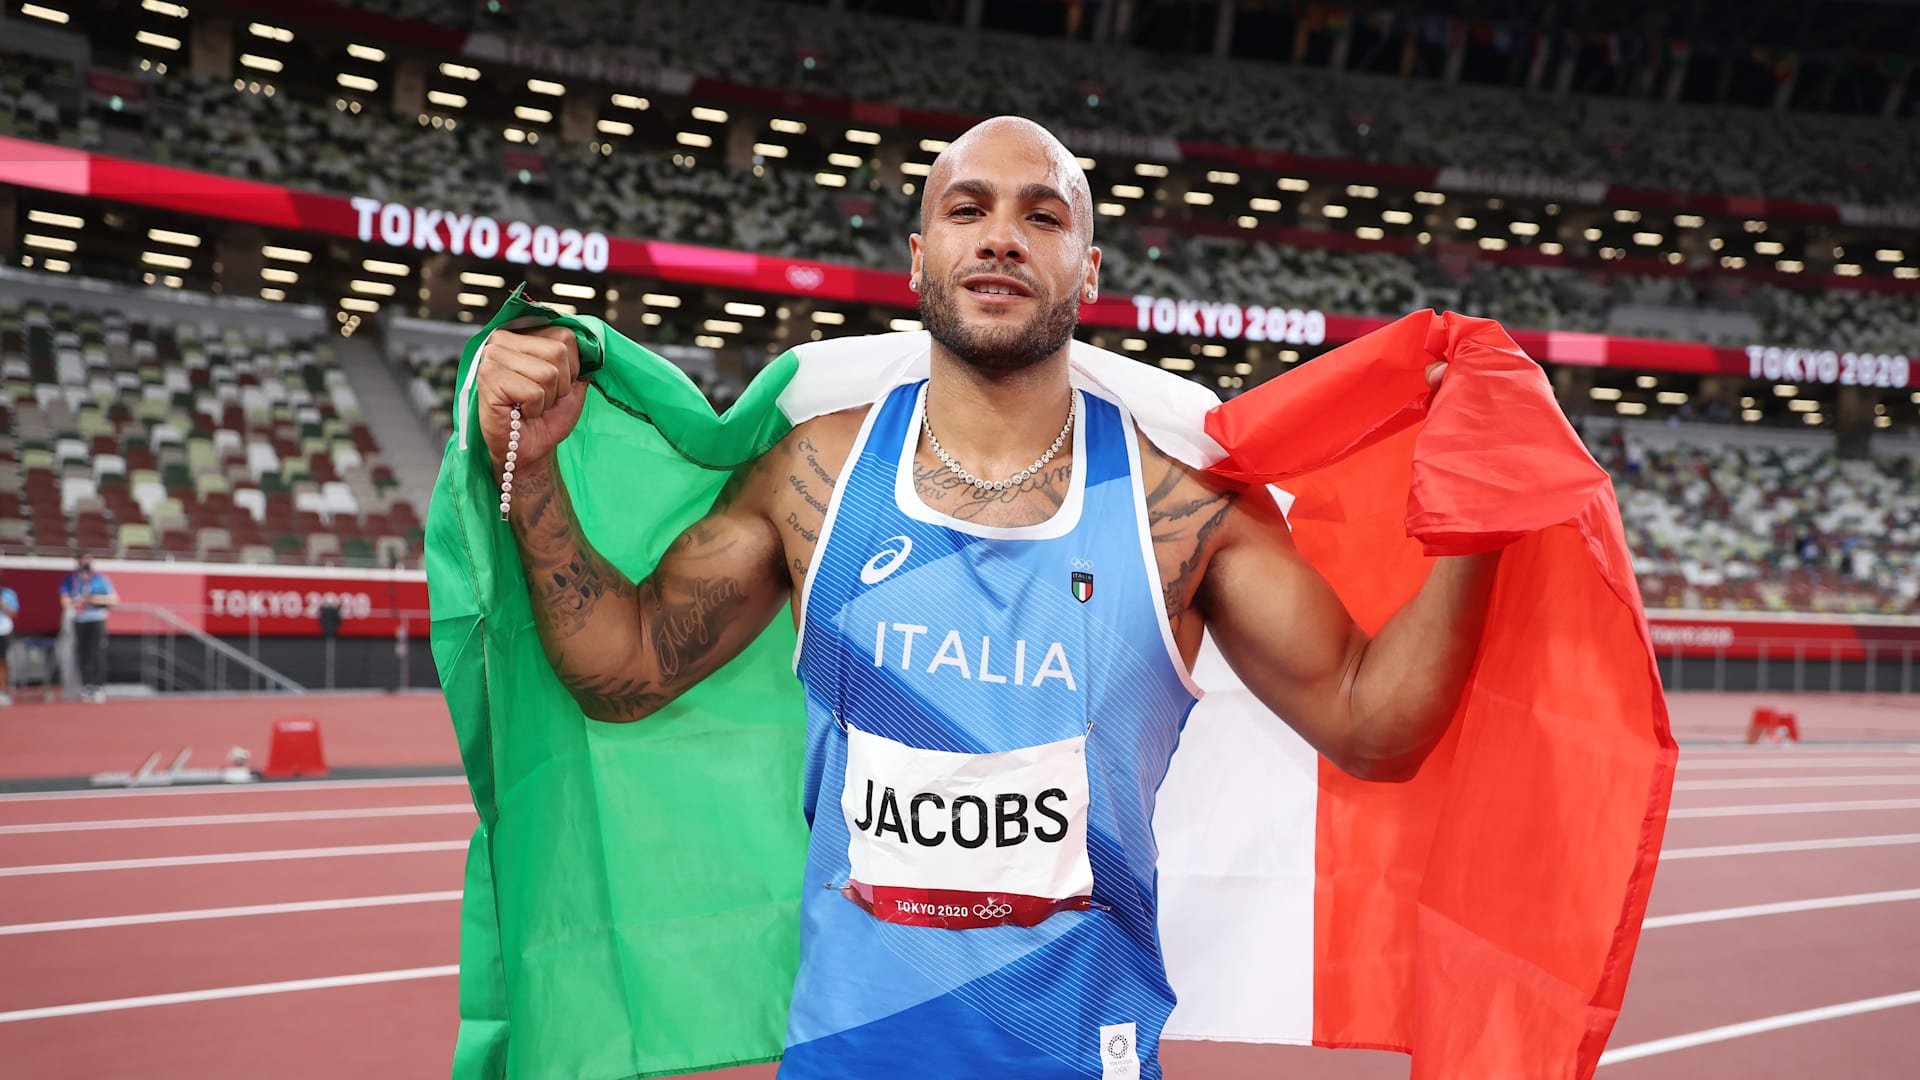 Europei di atletica, semifinale e finale dei 100 metri: a che ora scende in pista Marcell Jacobs e dove vederlo